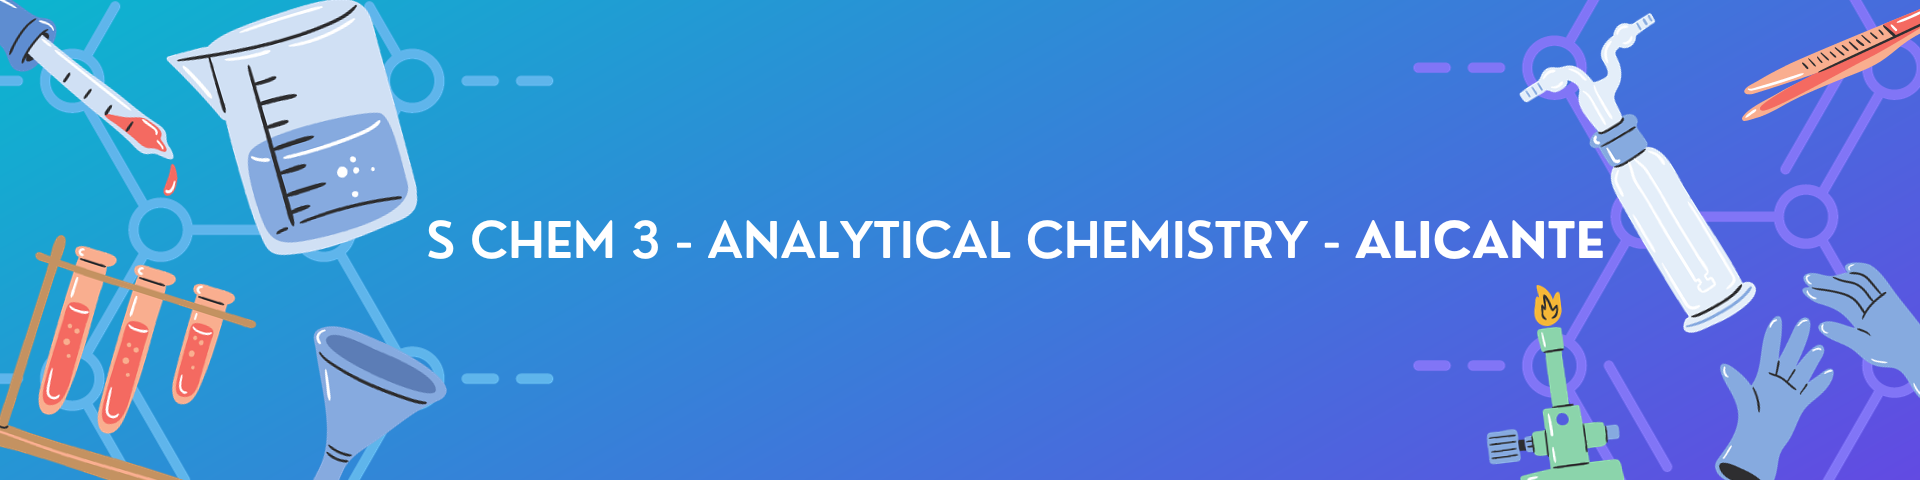 S CHEM 3 - Analytical Chemistry